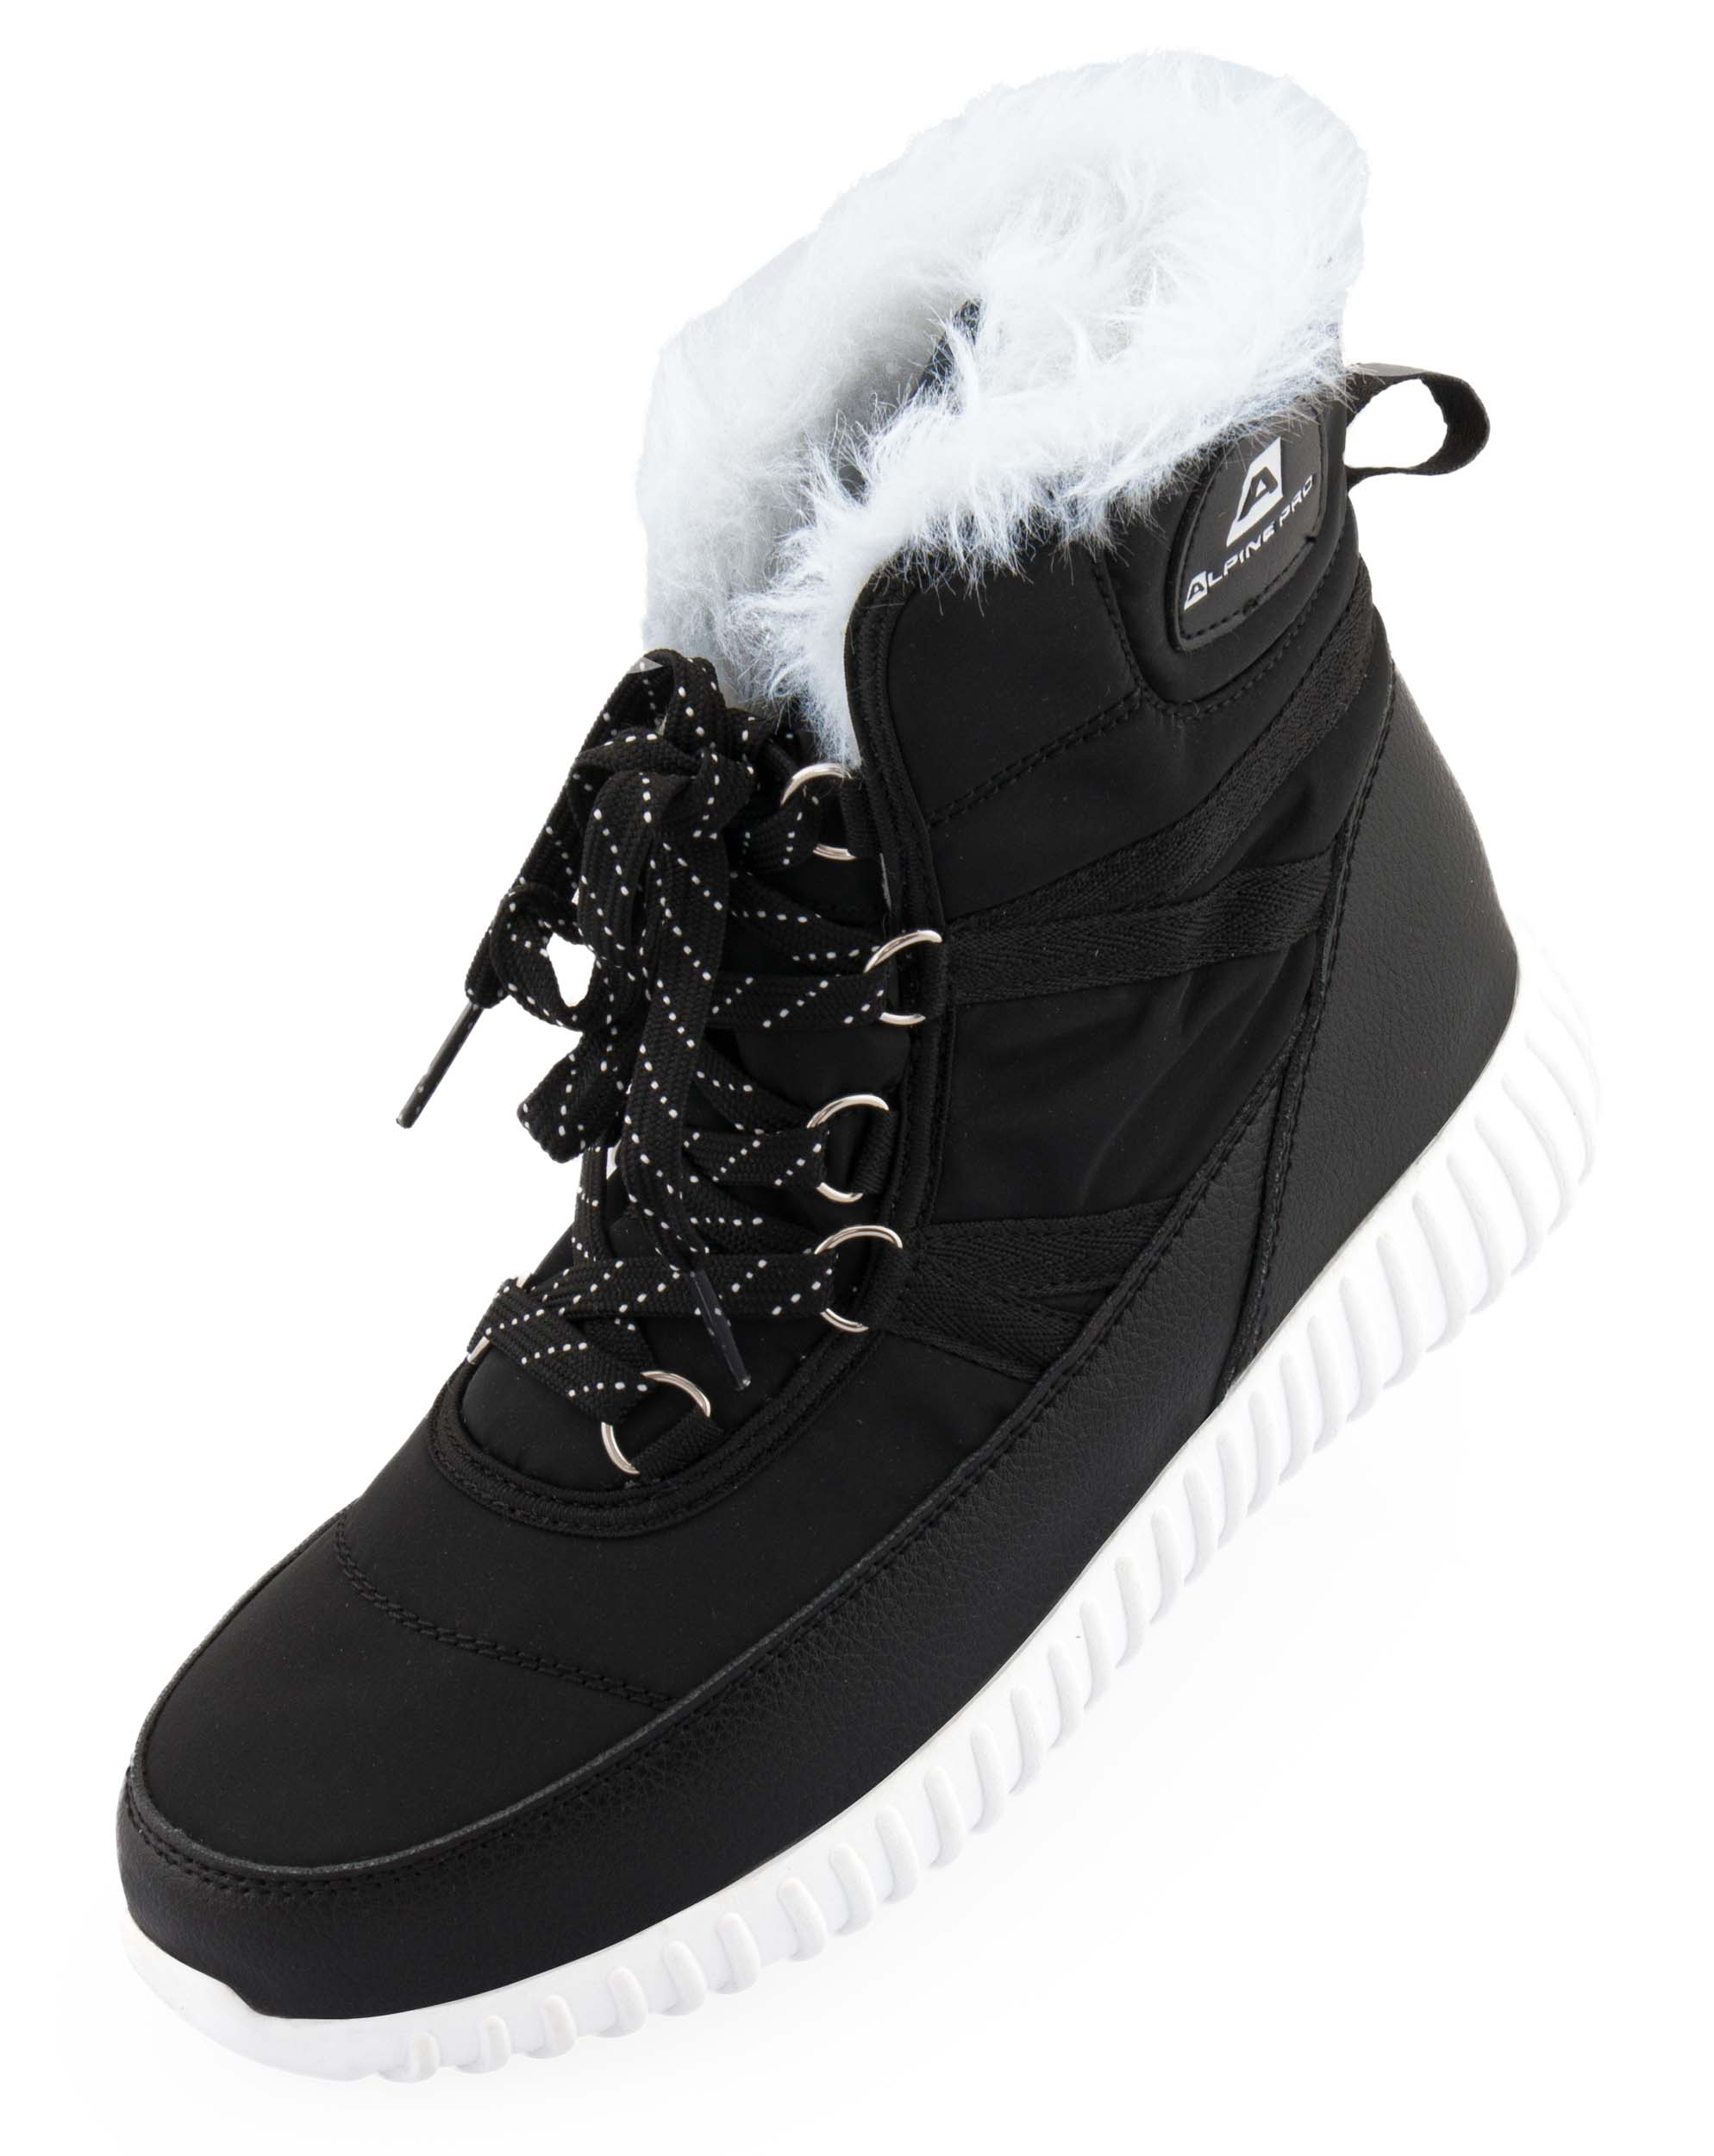 Dámská zimní obuv ALPINE PRO NERA|EUR 36